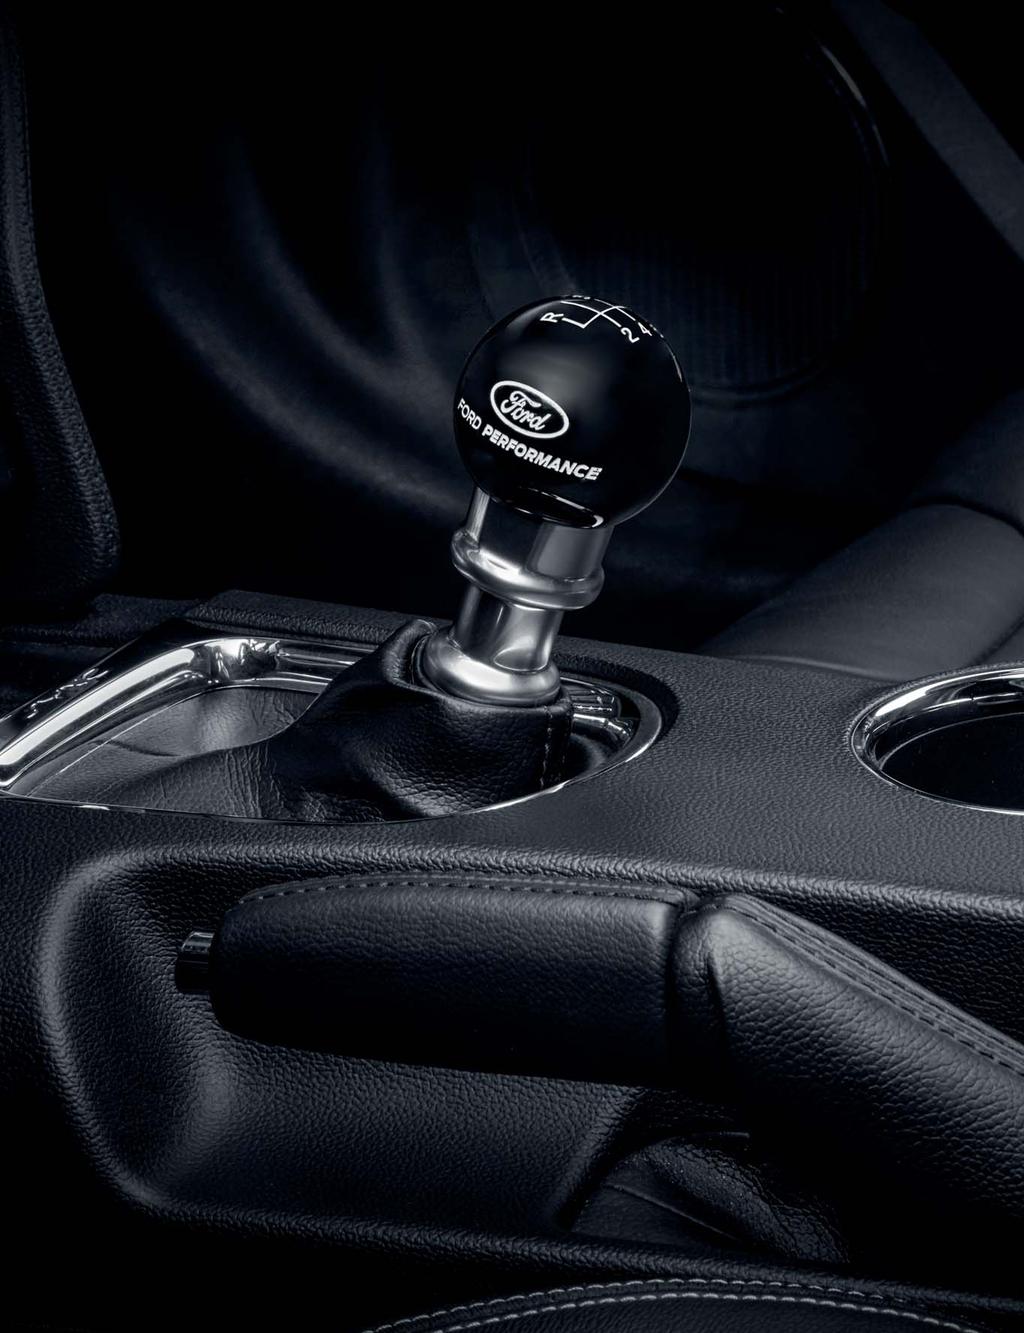 MUSTANG Interiördesign Performance golvmattor Specialgolvmattor för Fiesta, Focus och Mustang med